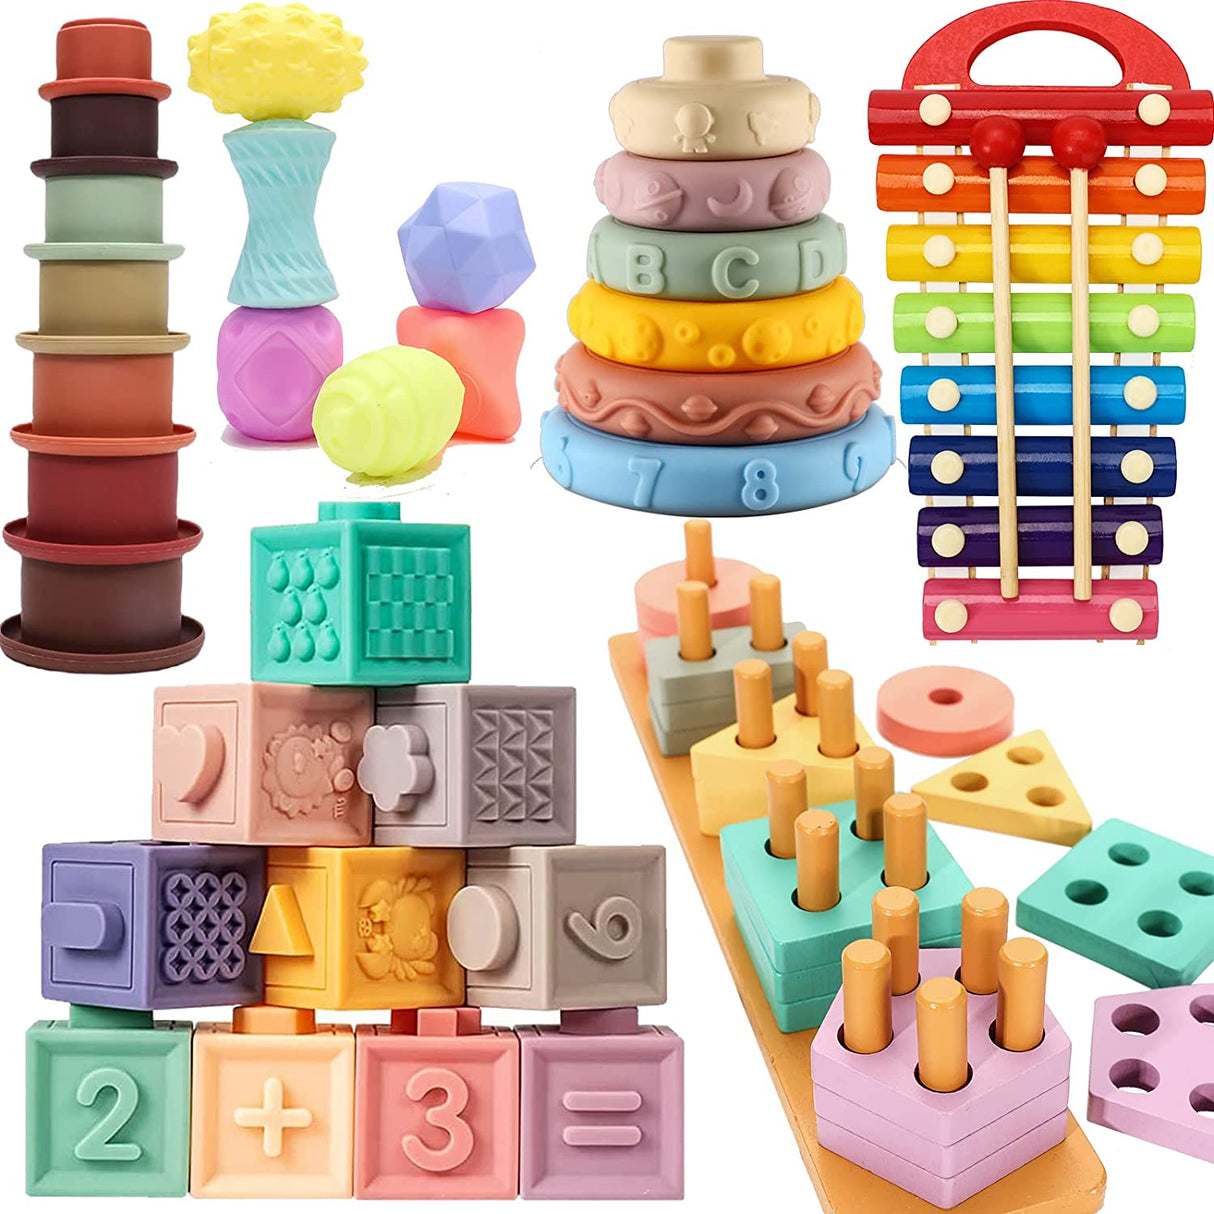 Tienda Montessori - Juguetes Montessori de 1 a 3 años